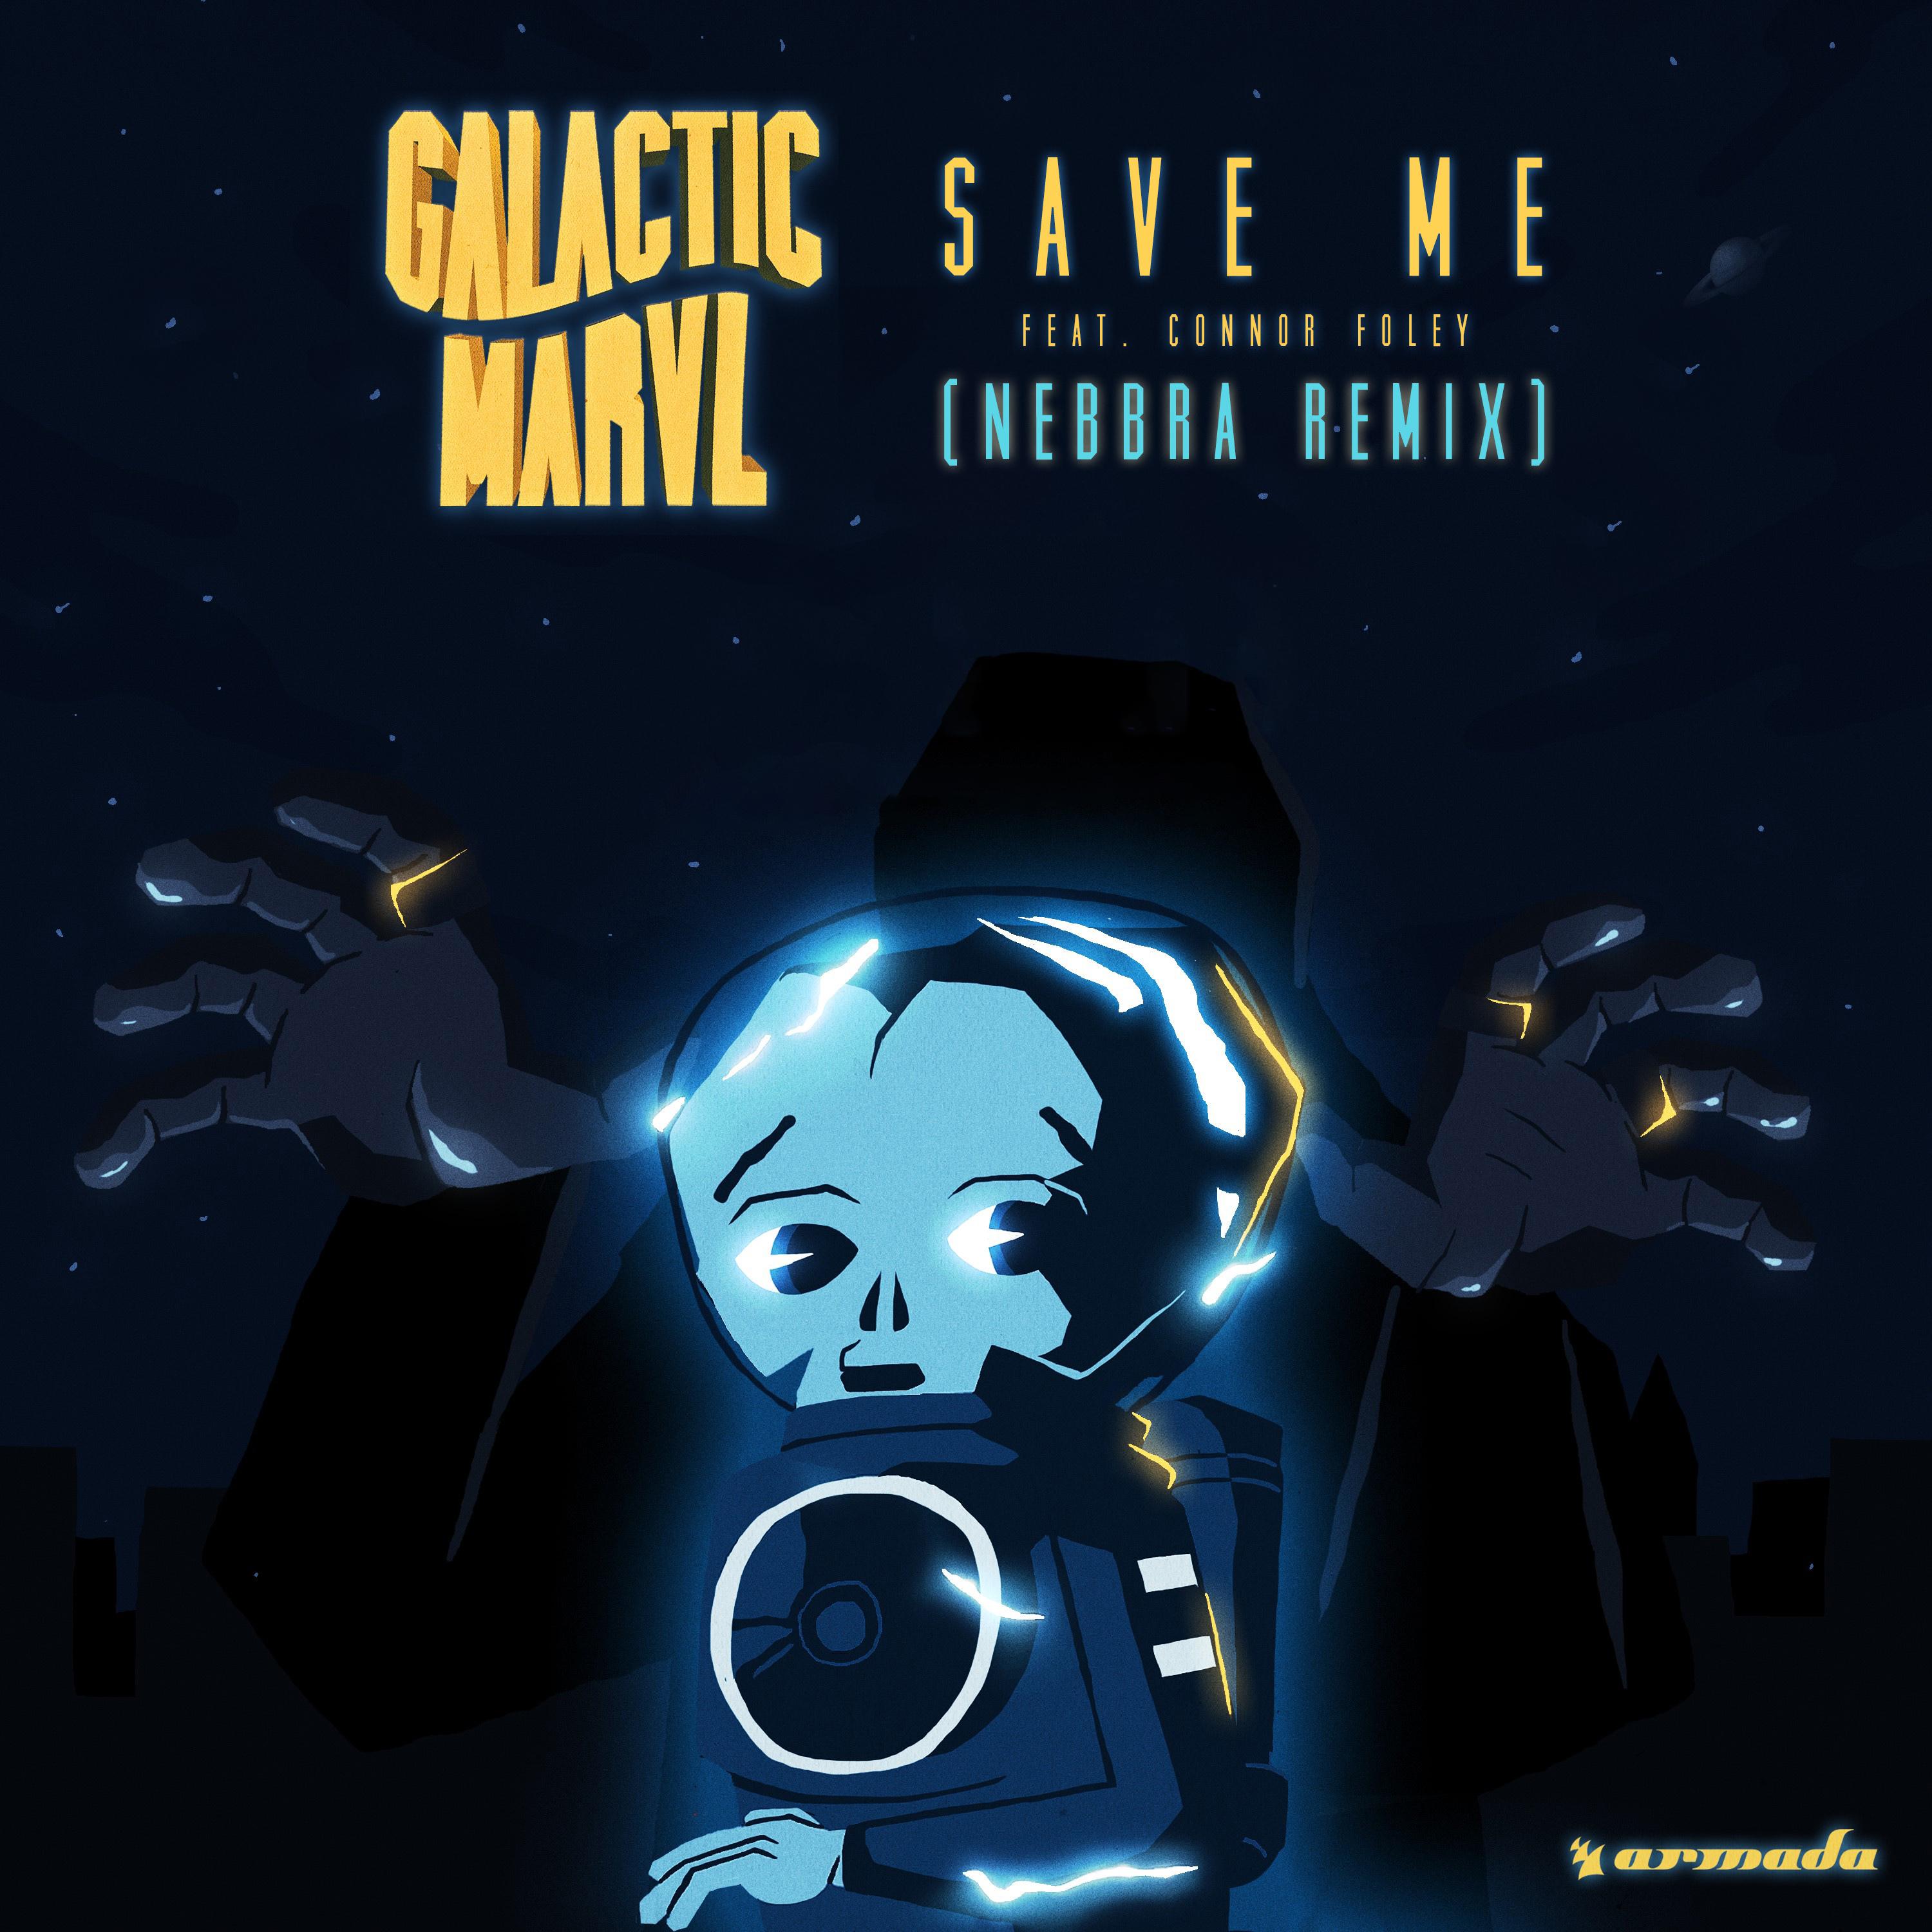 Save Me (Nebbra Remix)